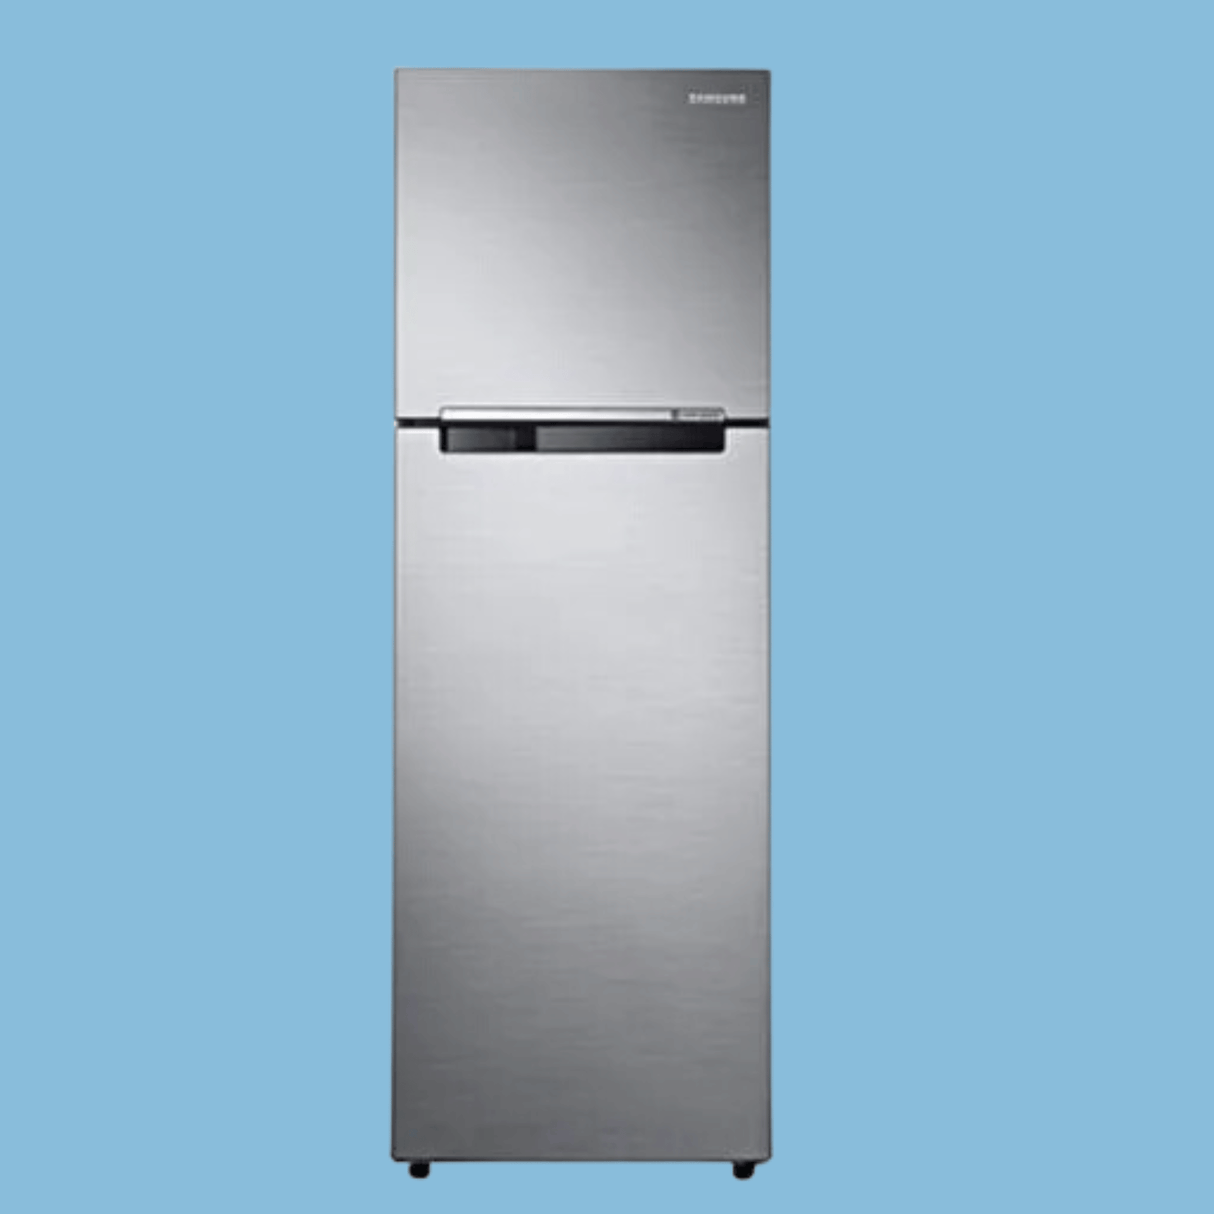 Samsung 310L 2 Door Top Freezer Fridge w/ Cool Pack, Recessed Handle | RT31 K3052S8 - Inox